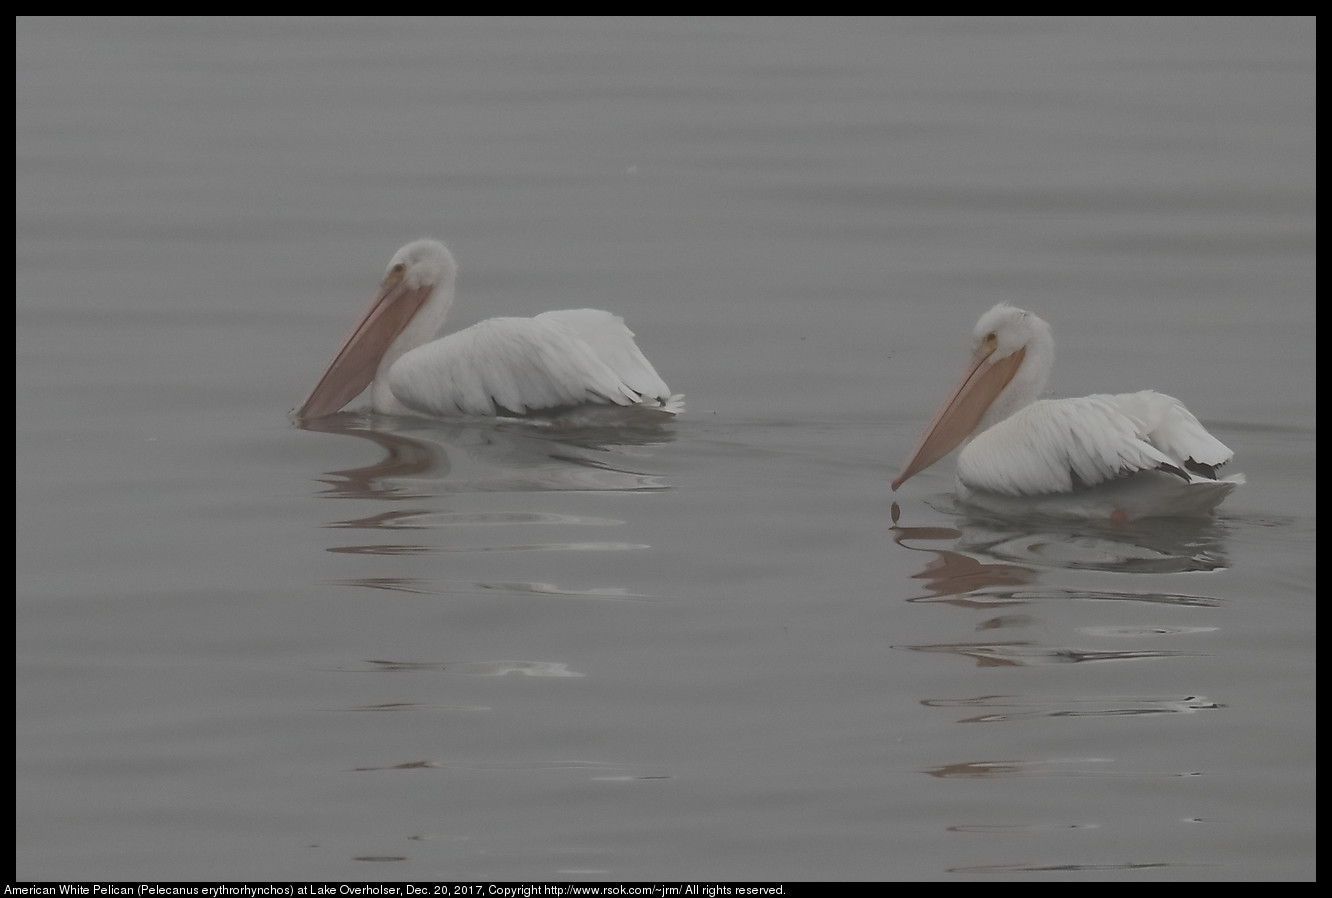 American White Pelicans (Pelecanus erythrorhynchos) in Fog at Lake Overholser, Dec. 20, 2017